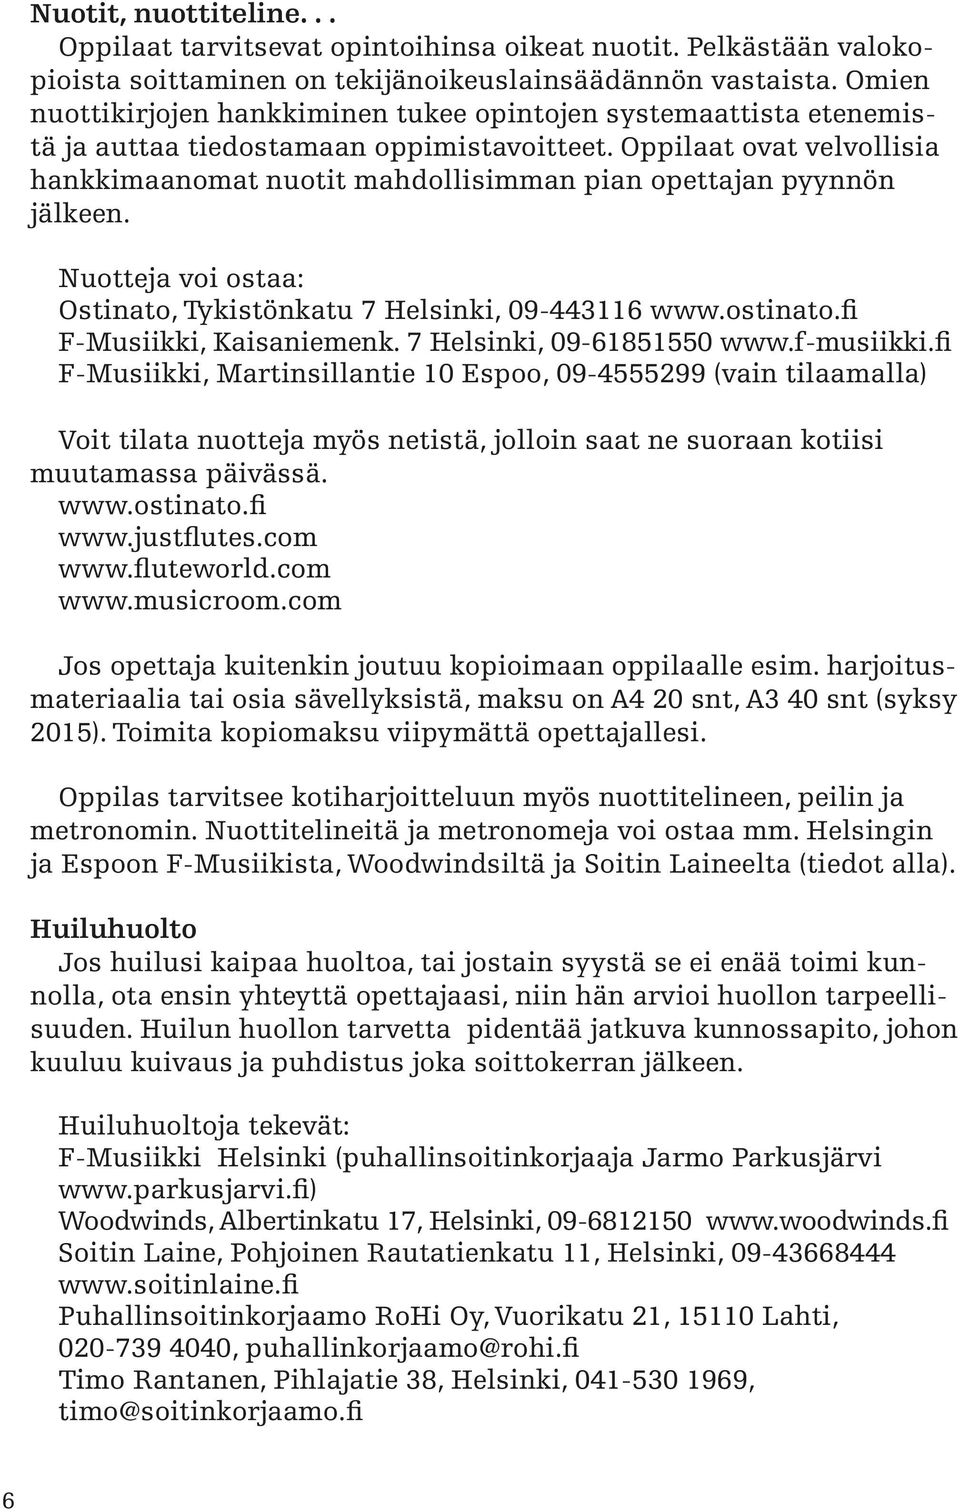 Oppilaat ovat velvollisia hankkimaanomat nuotit mahdollisimman pian opettajan pyynnön jälkeen. Nuotteja voi ostaa: Ostinato, Tykistönkatu 7 Helsinki, 09-443116 www.ostinato.